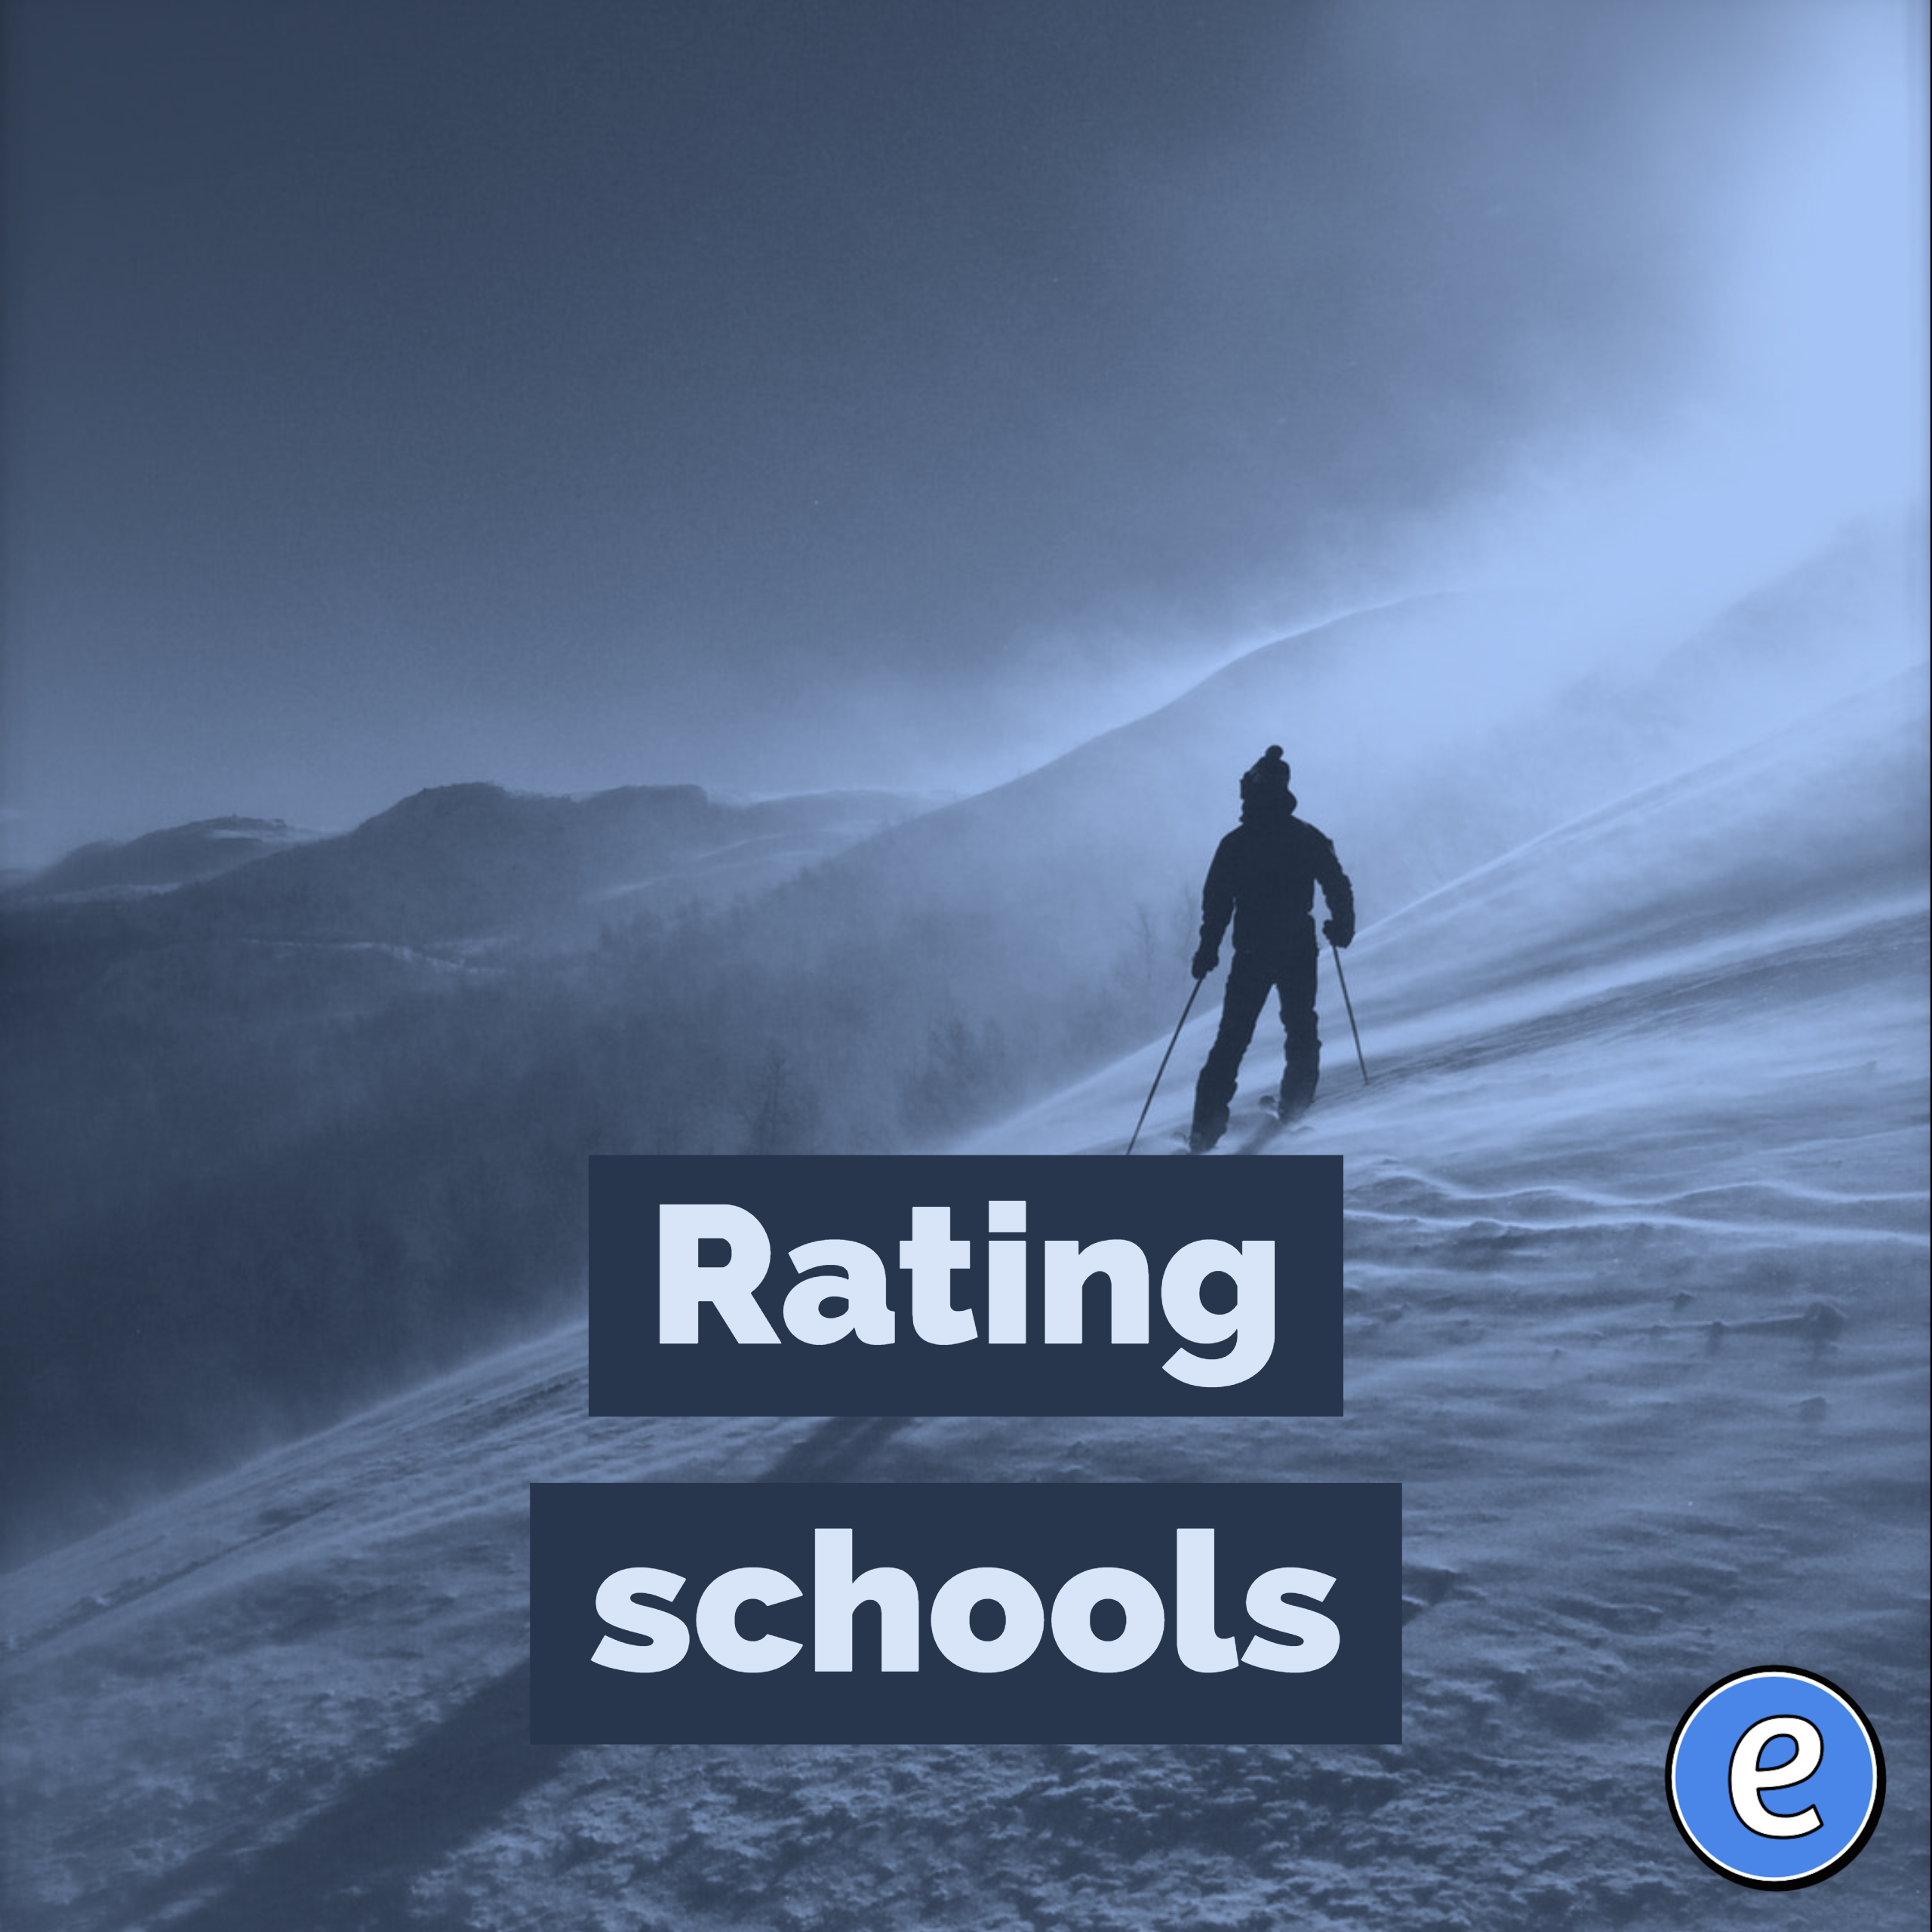 Rating schools